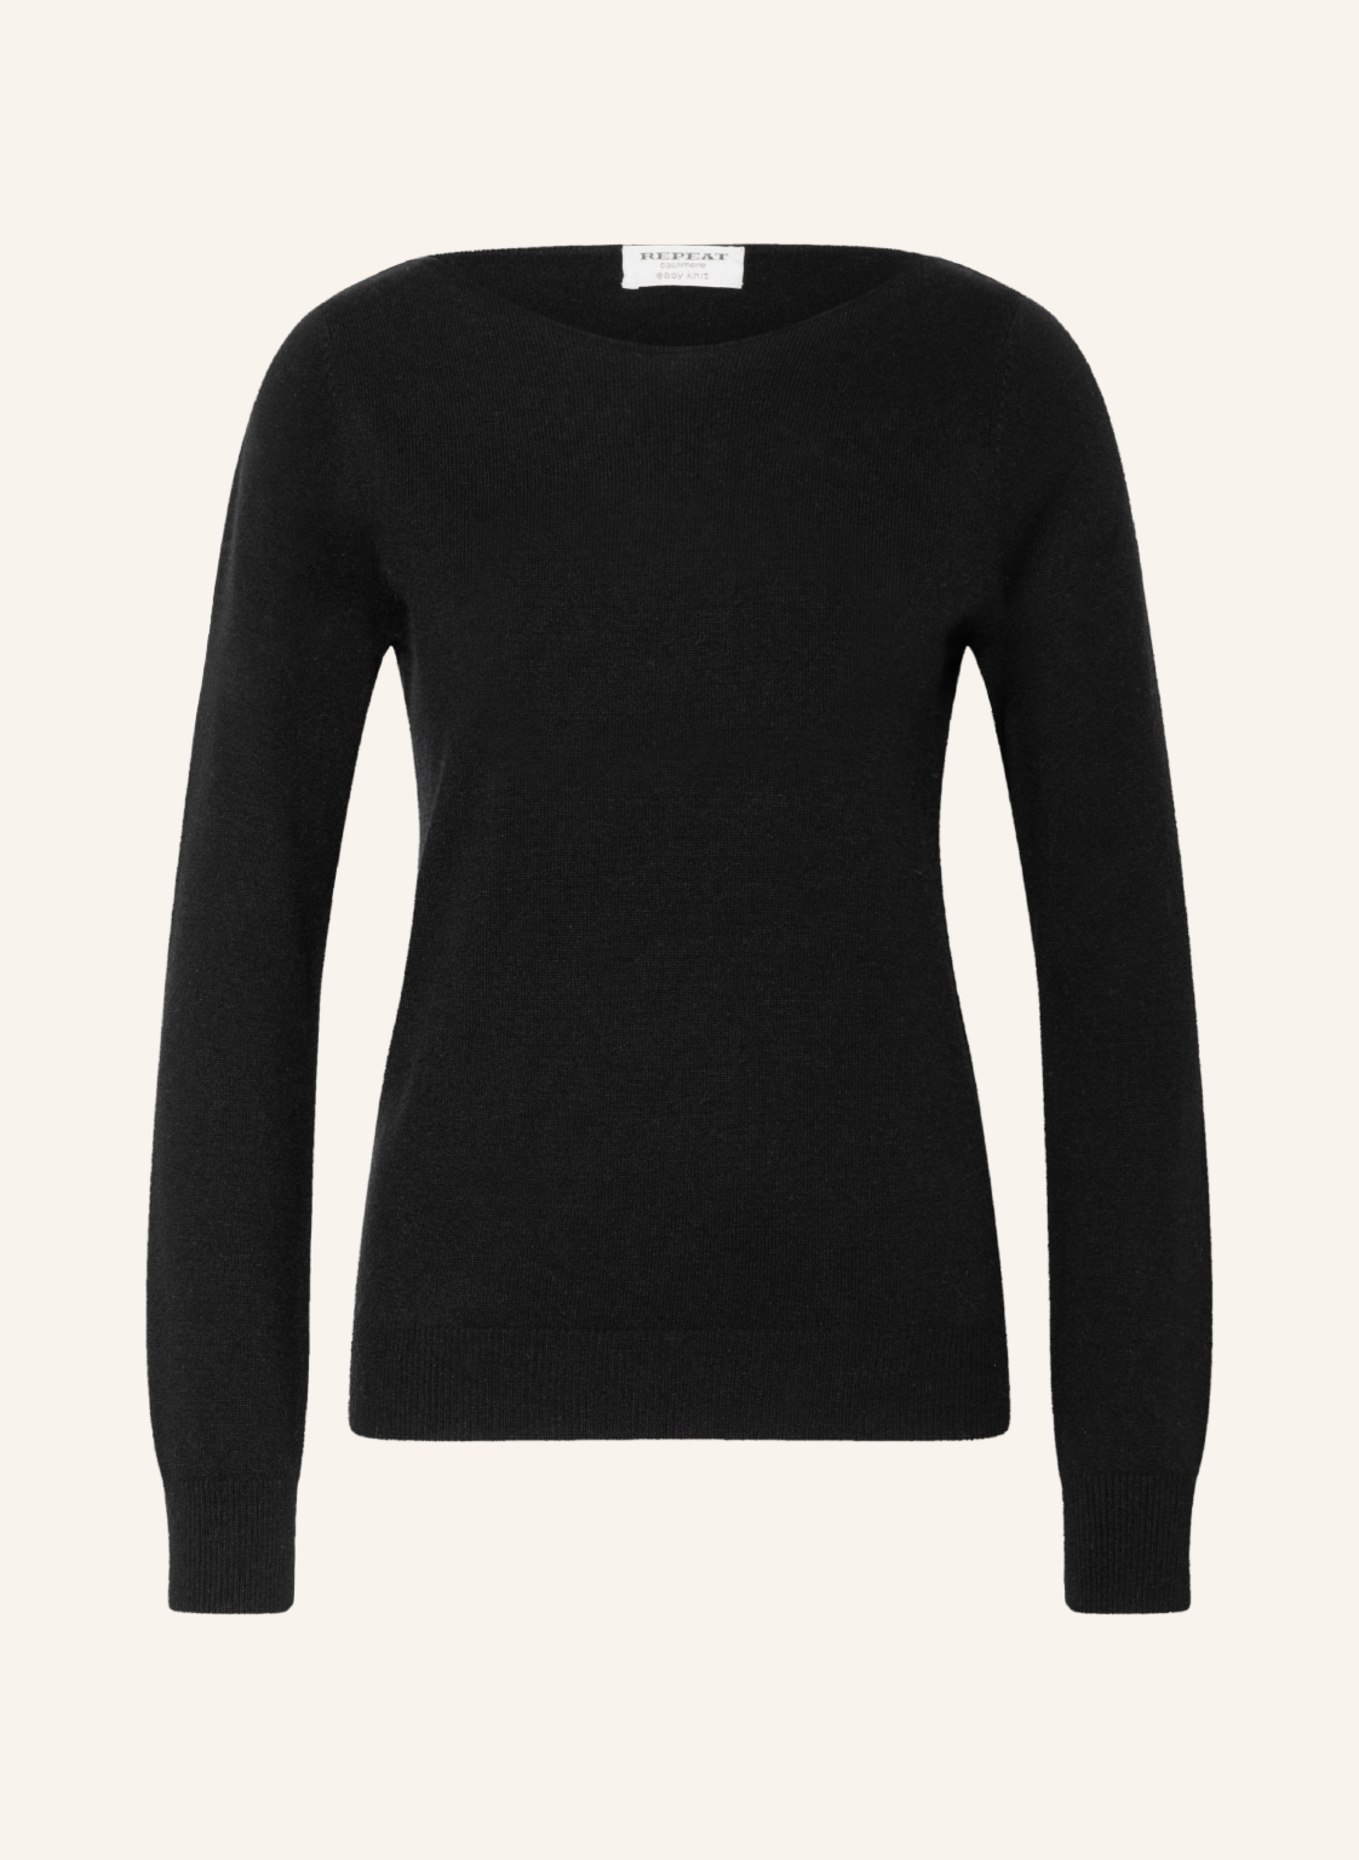 REPEAT Cashmere-Pullover, Farbe: SCHWARZ (Bild 1)